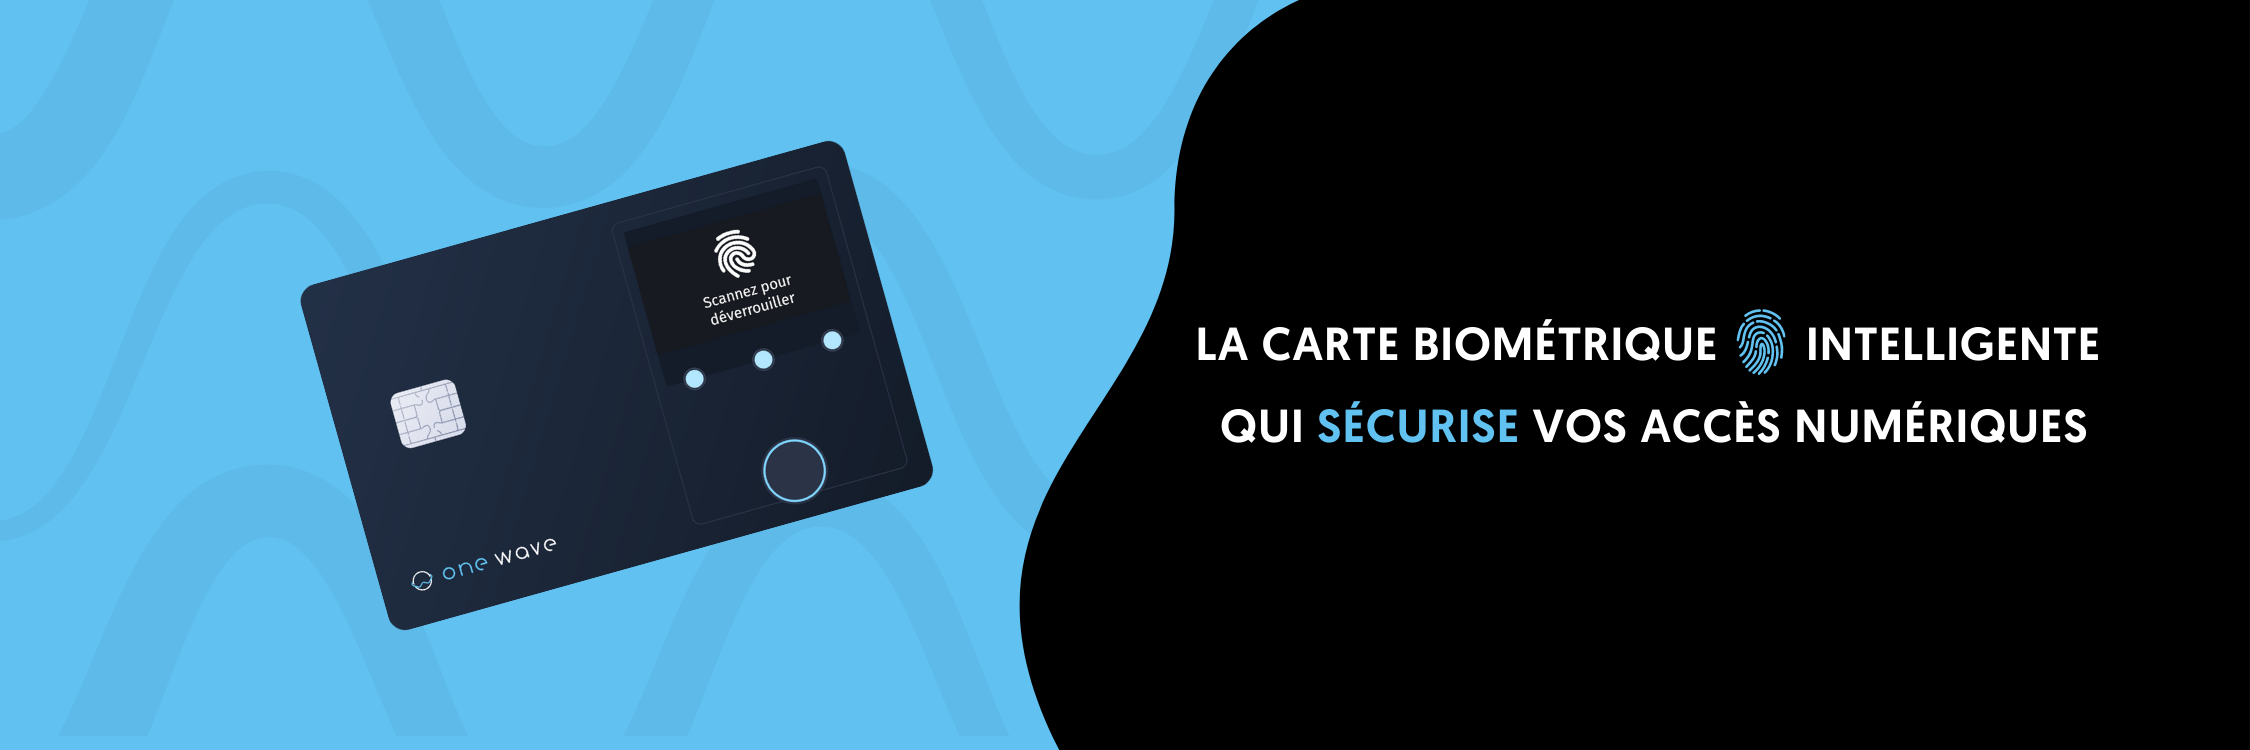 Avis Onewave : La carte biométrique intelligente qui sécurise vos accès - Appvizer